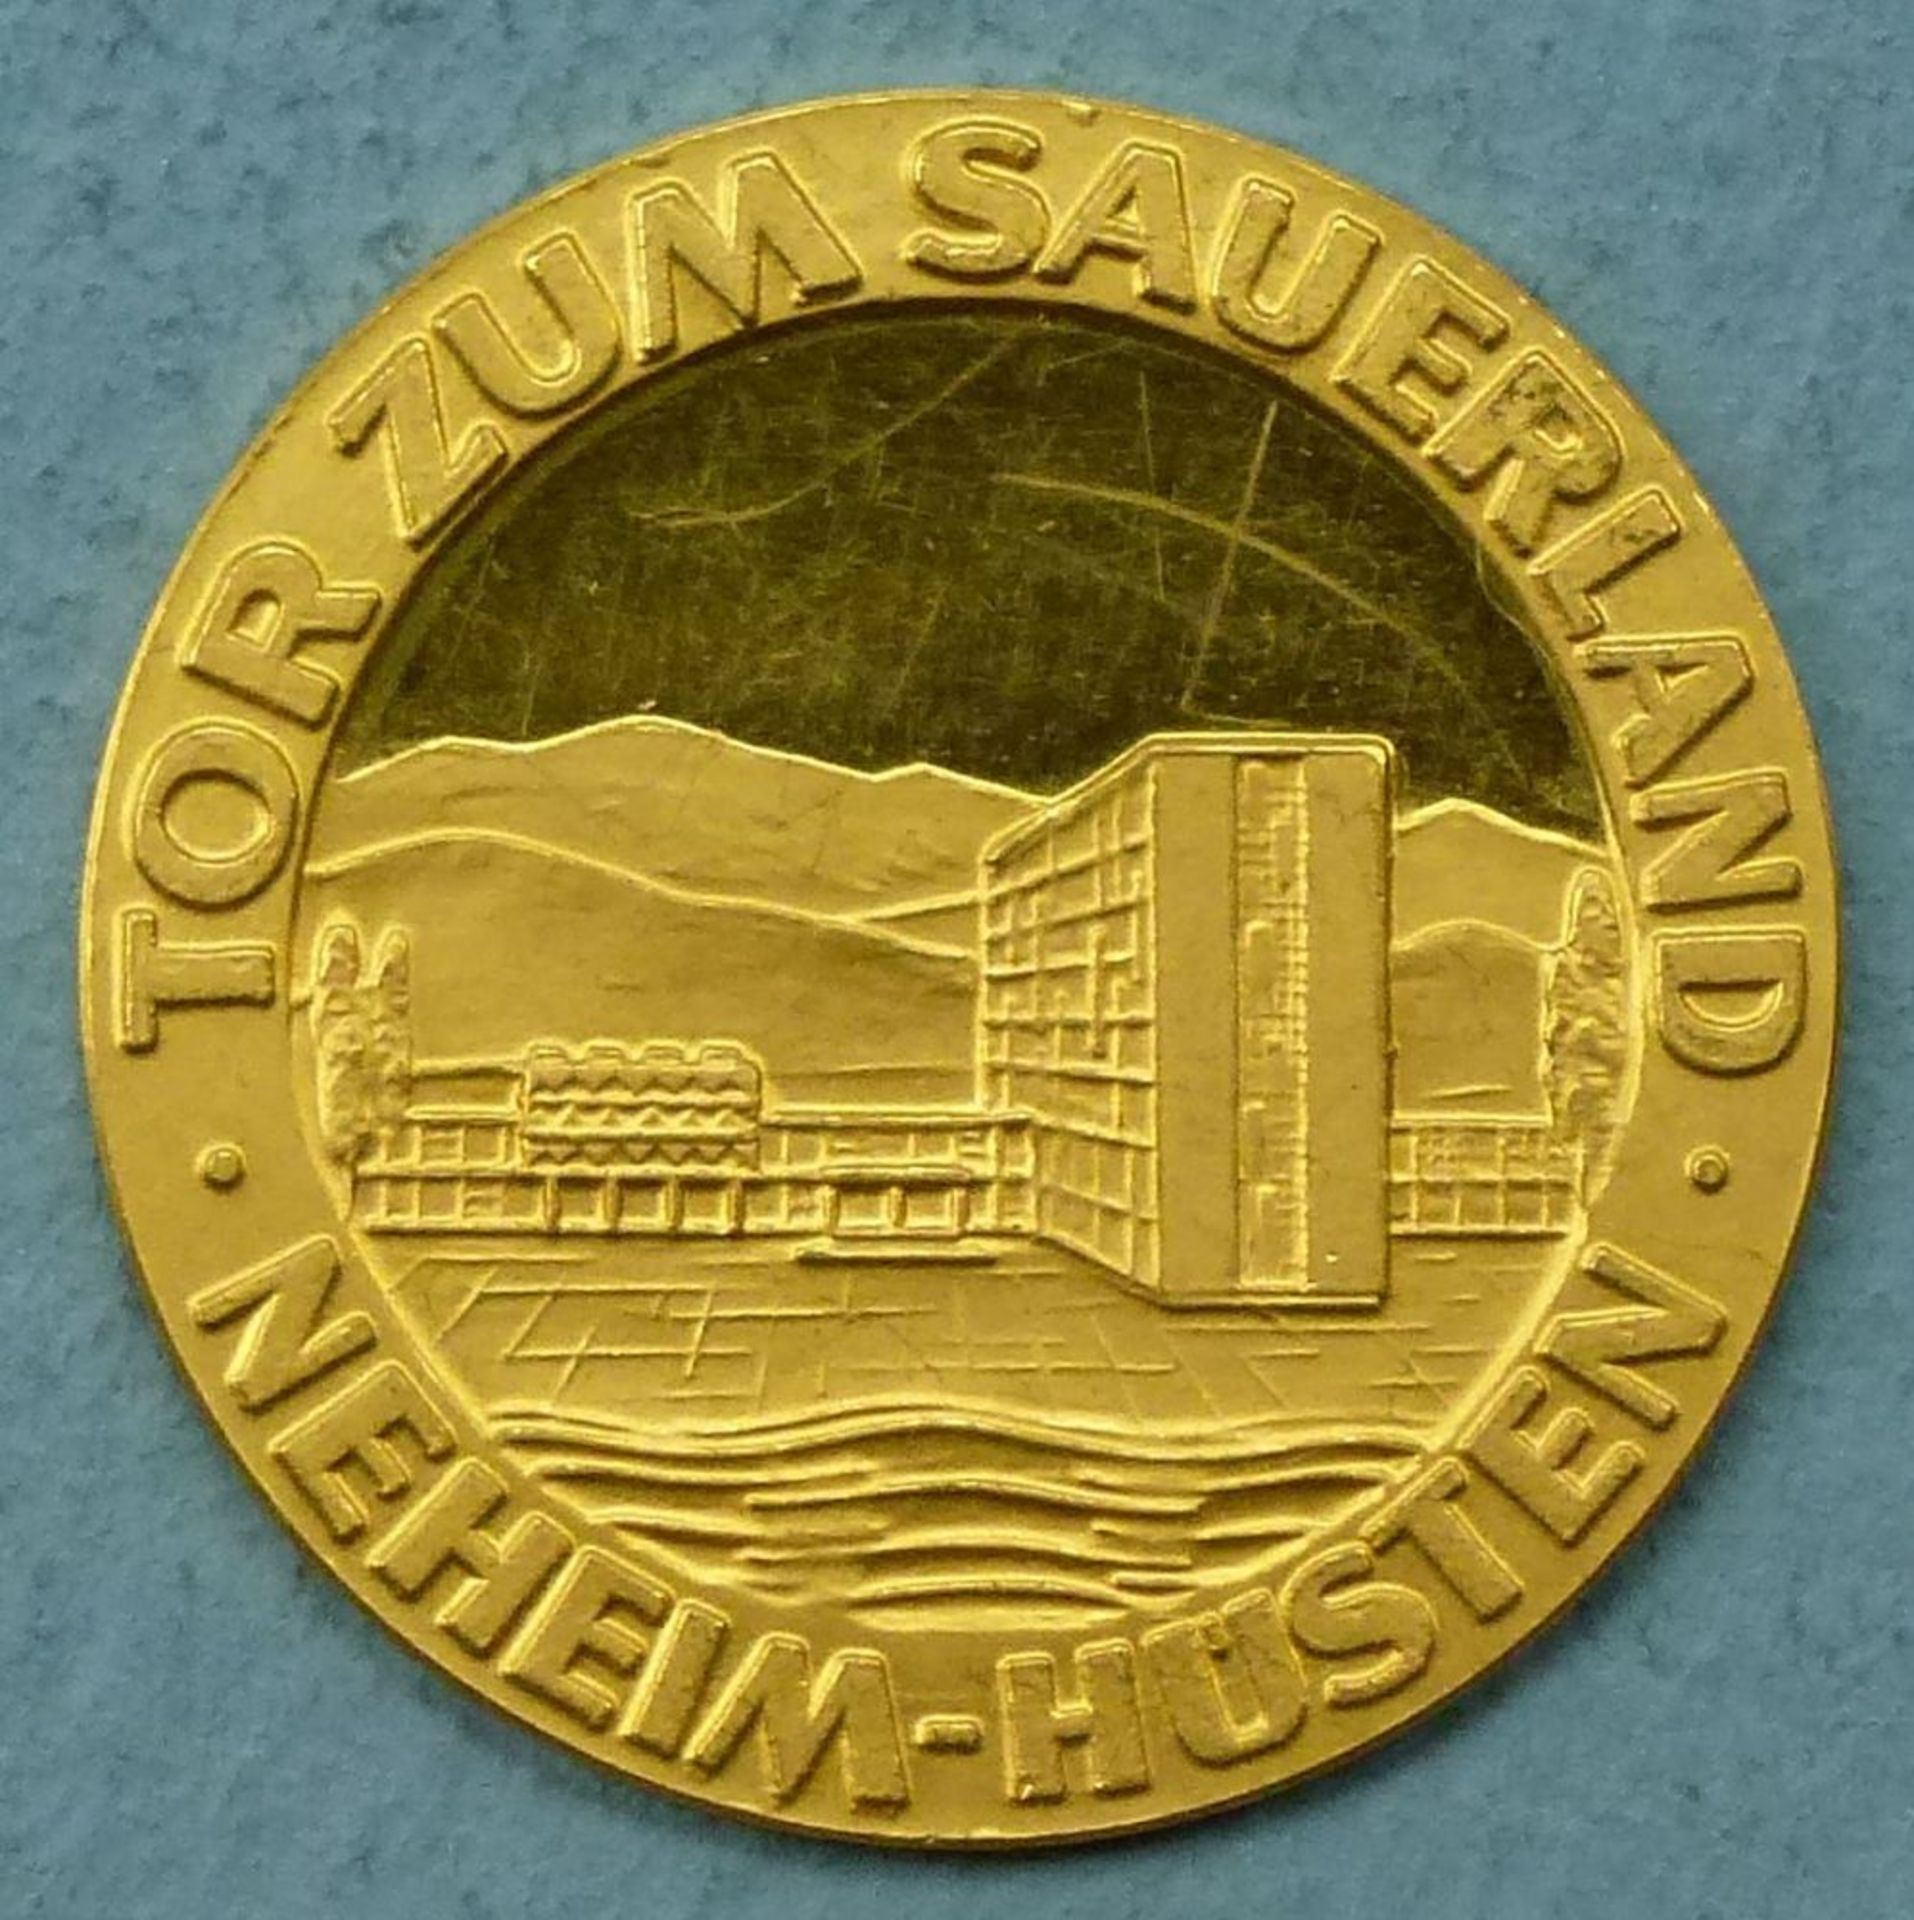 Goldmünze "Tor zum Sauerland Neheim-Hüsten"980er, 3,48 g, feine Kratzer, sonst guter Zustand